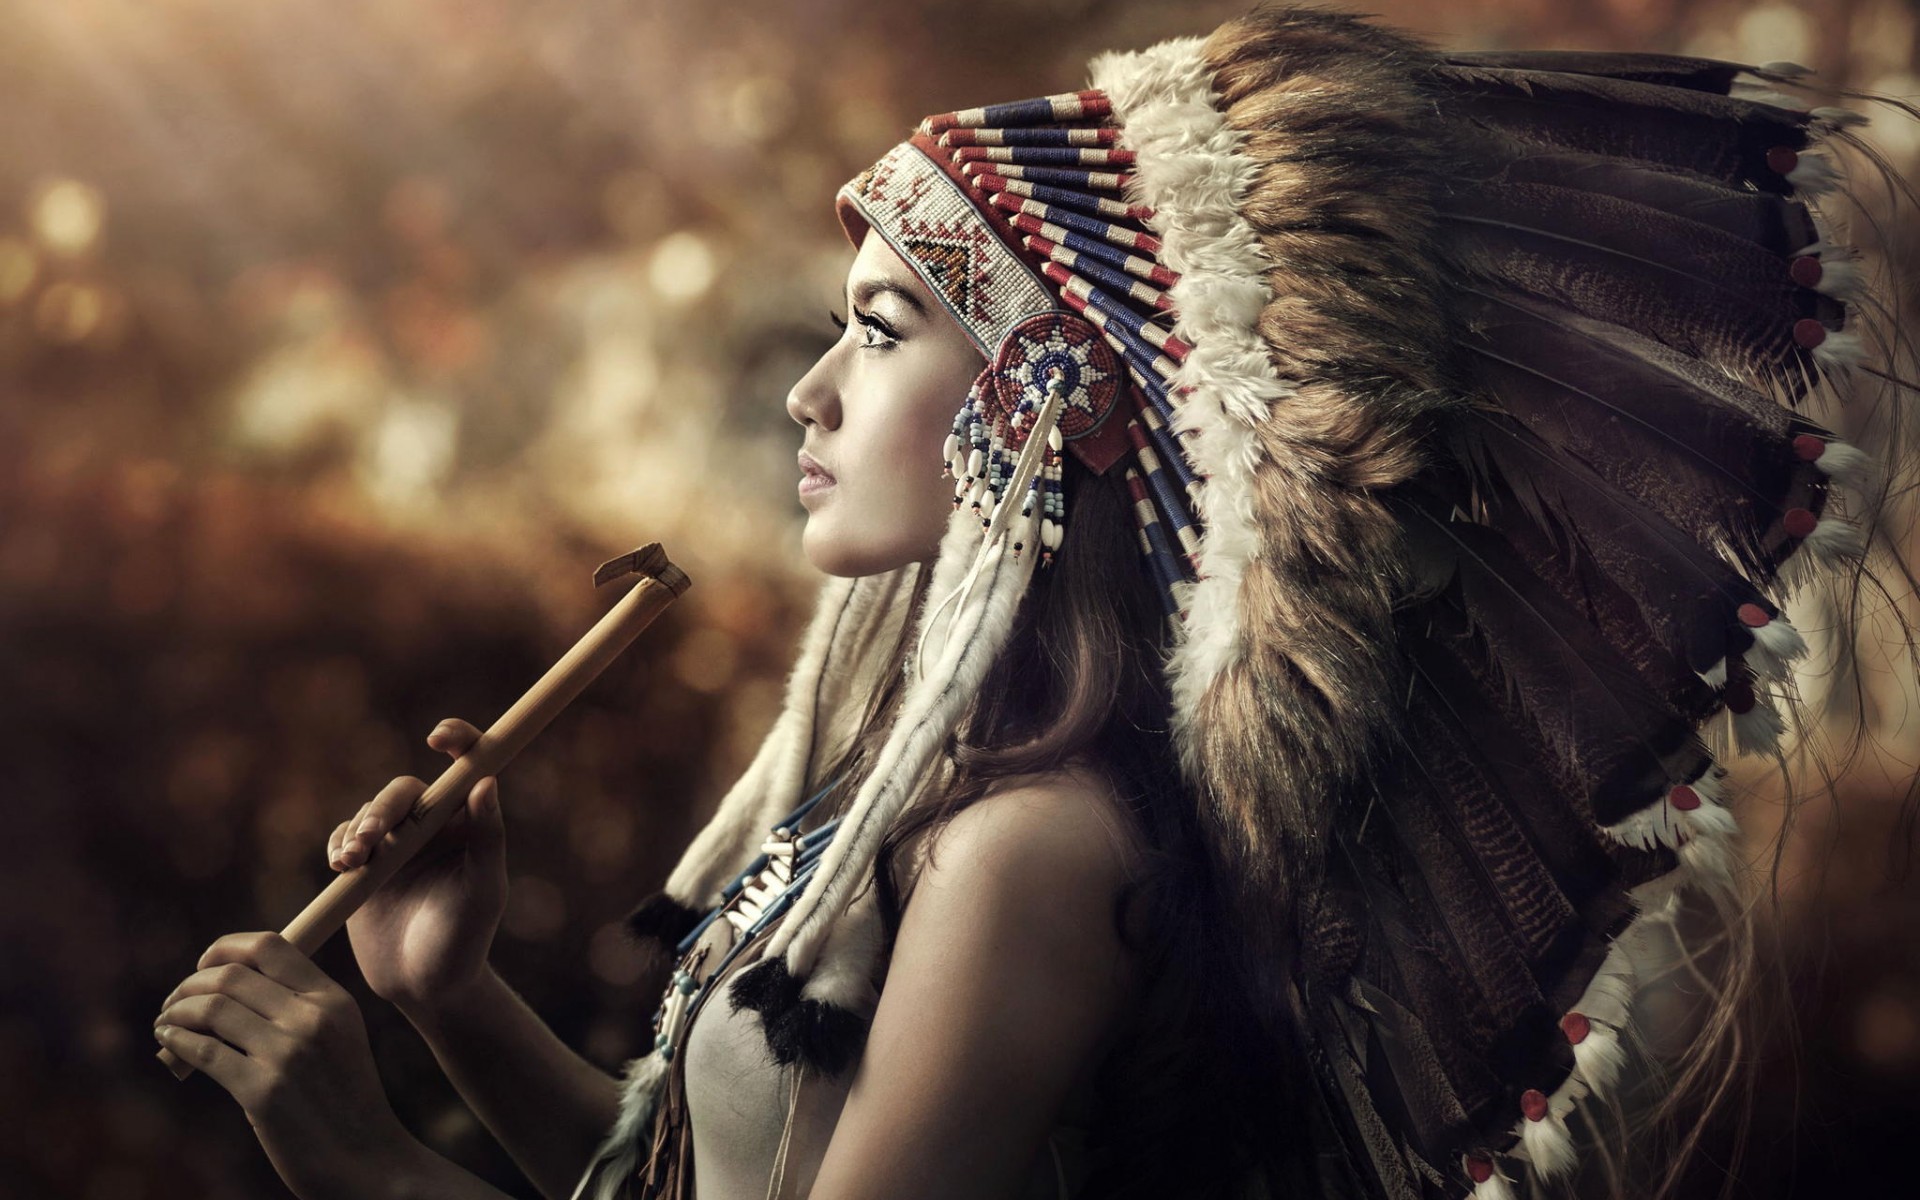 아메리카 원주민의 hd 벽지,아름다움,헤어 스타일,사진술,투구,머리 장식